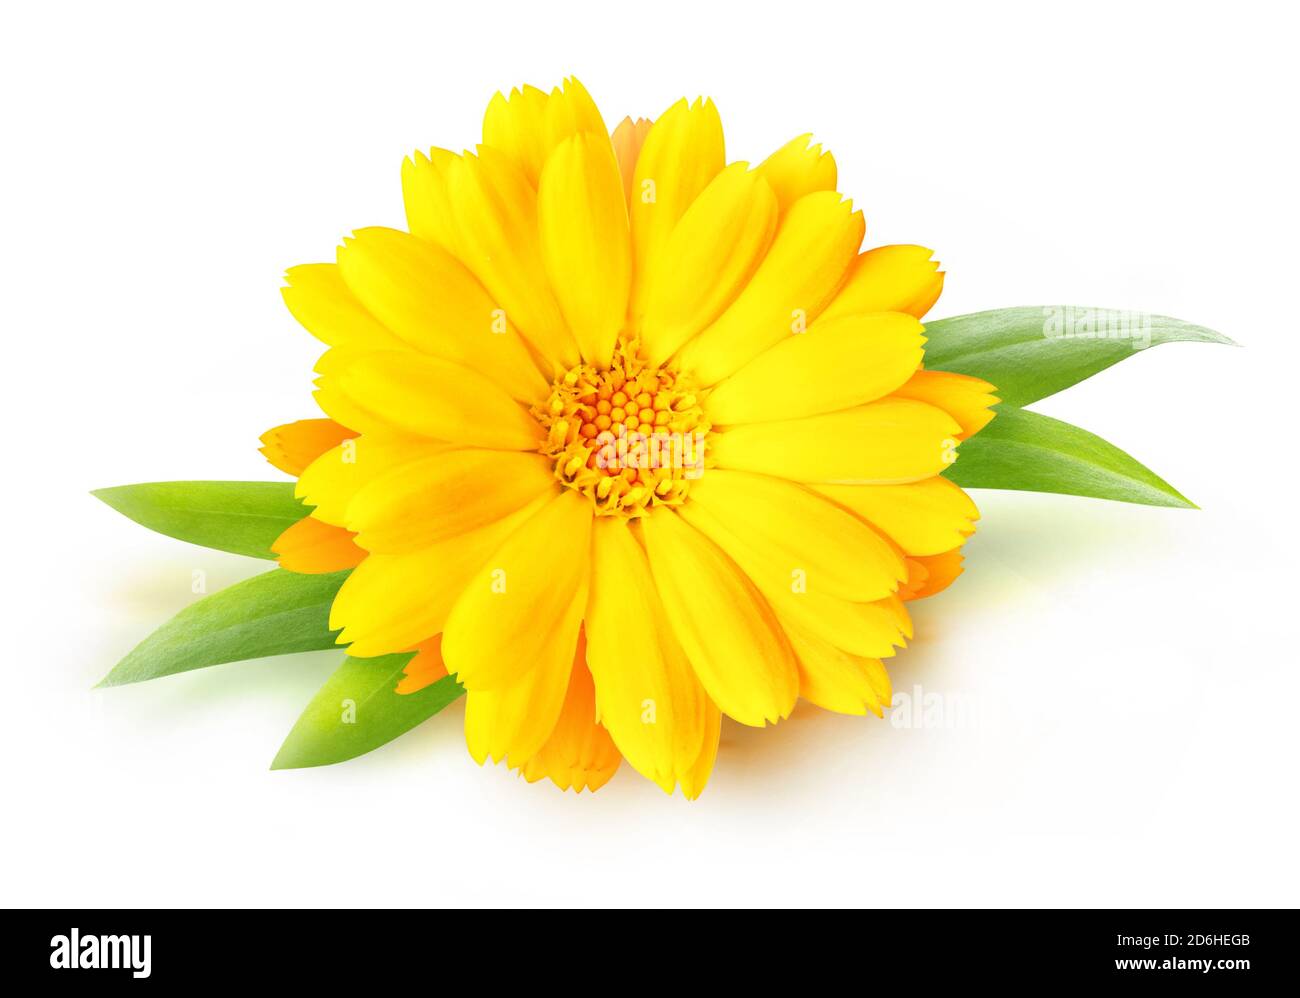 One calendula (marigold) flower isolated on white background Stock Photo